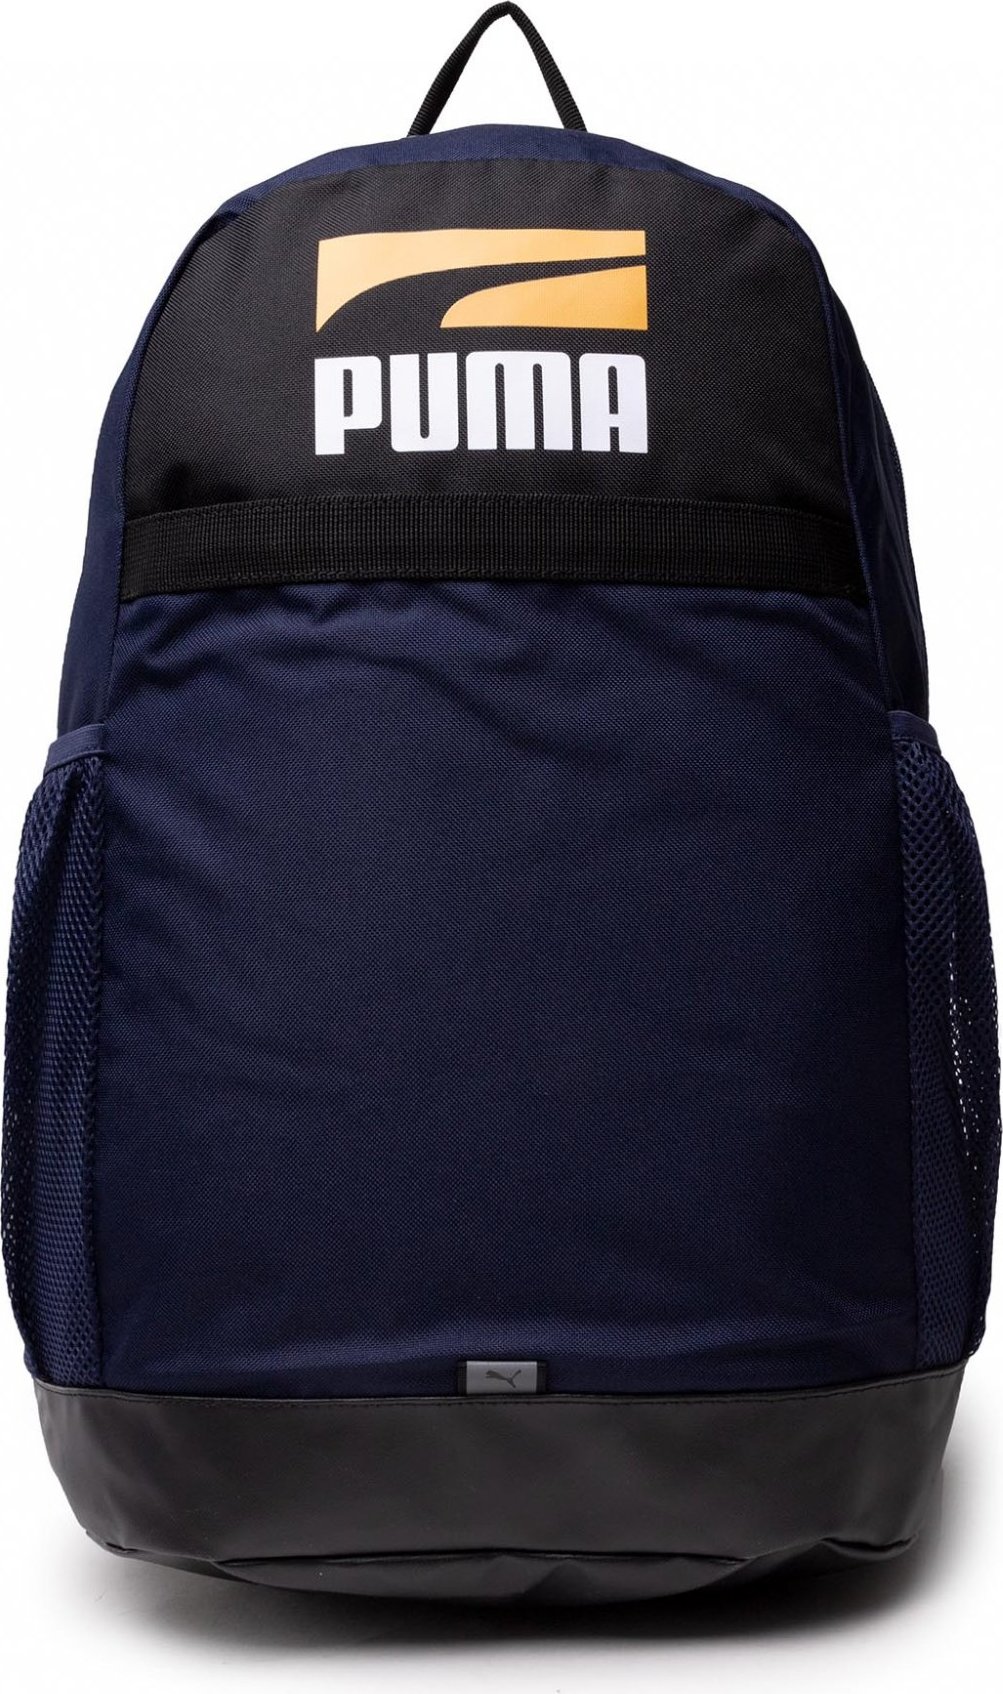 Puma Plus Backpack II 078391 02